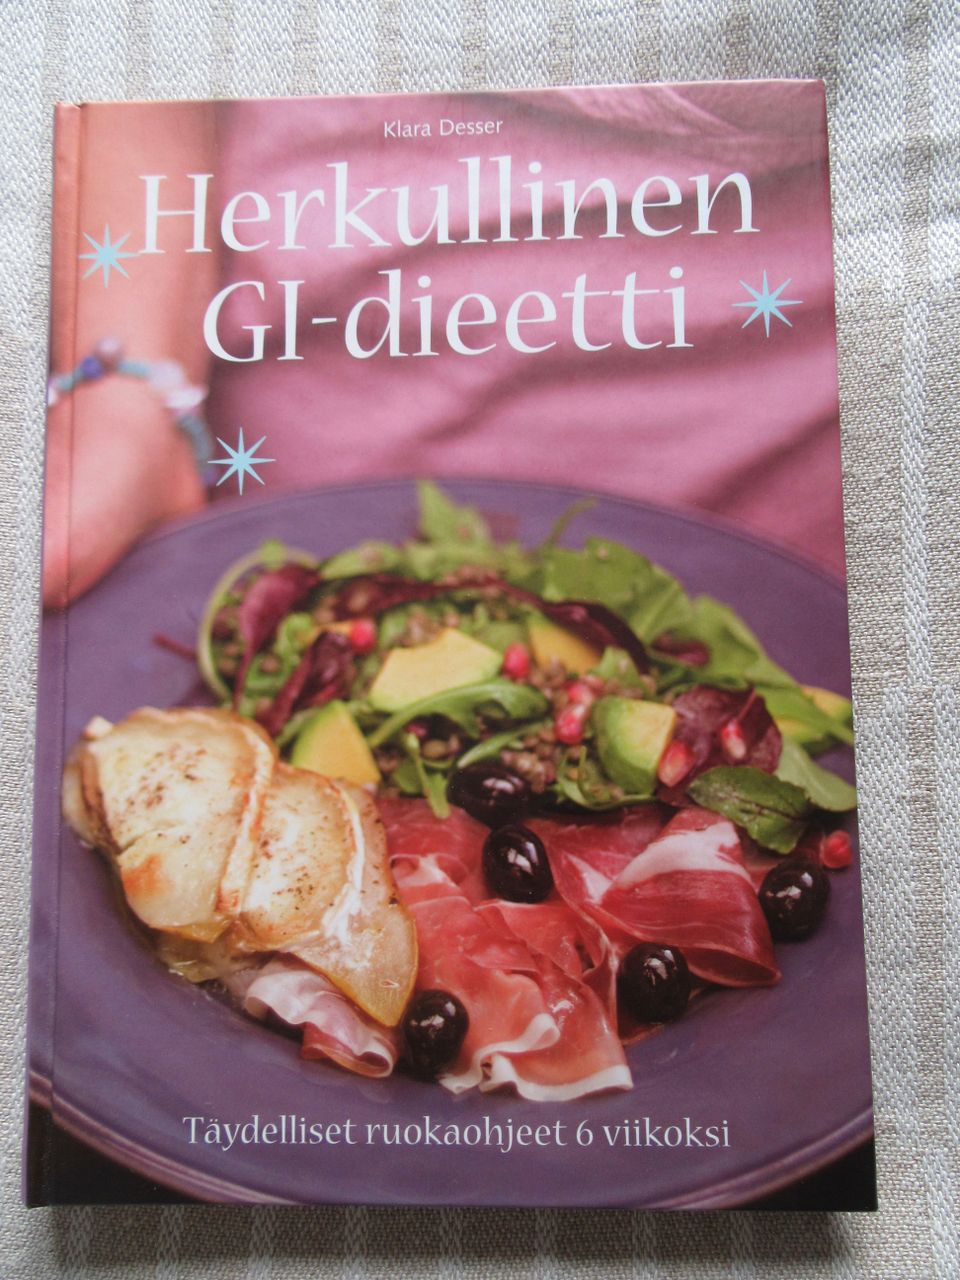 Klara Desser: Herkullinen GI-dieetti. Täydelliset ruokaohjeet 6 viikoksi